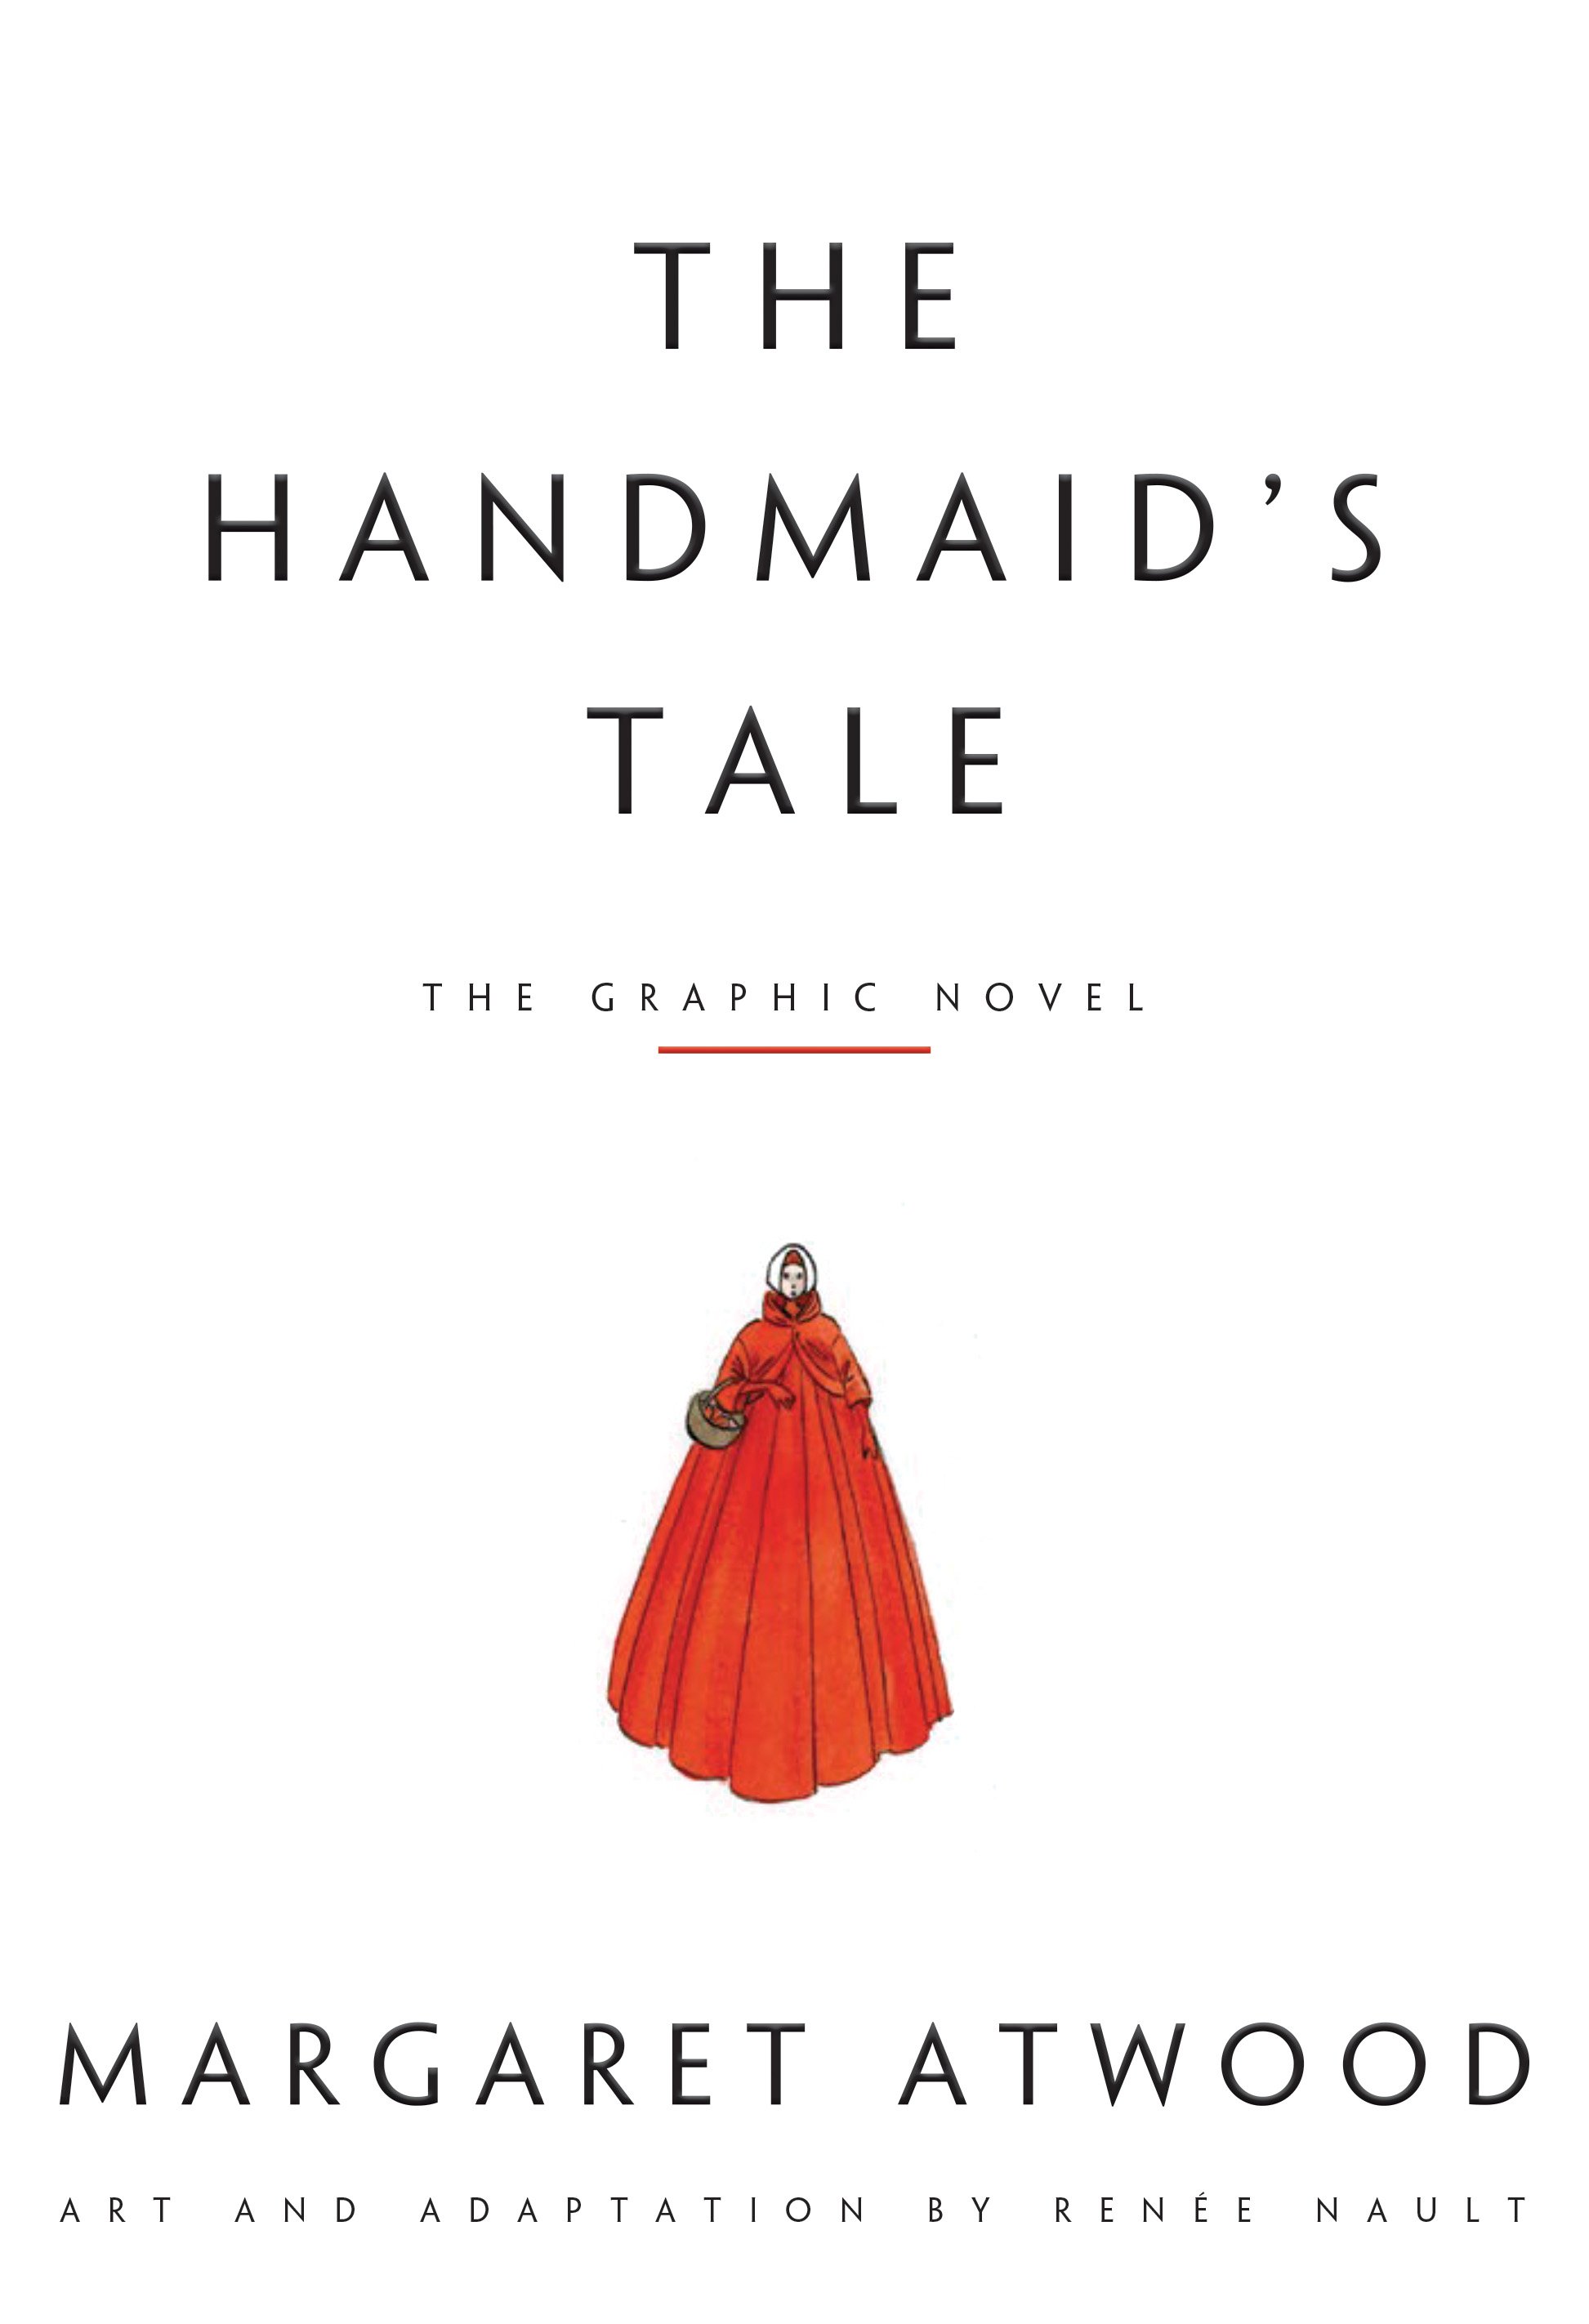 handmaid tale art 6b REVISED 2.jpg